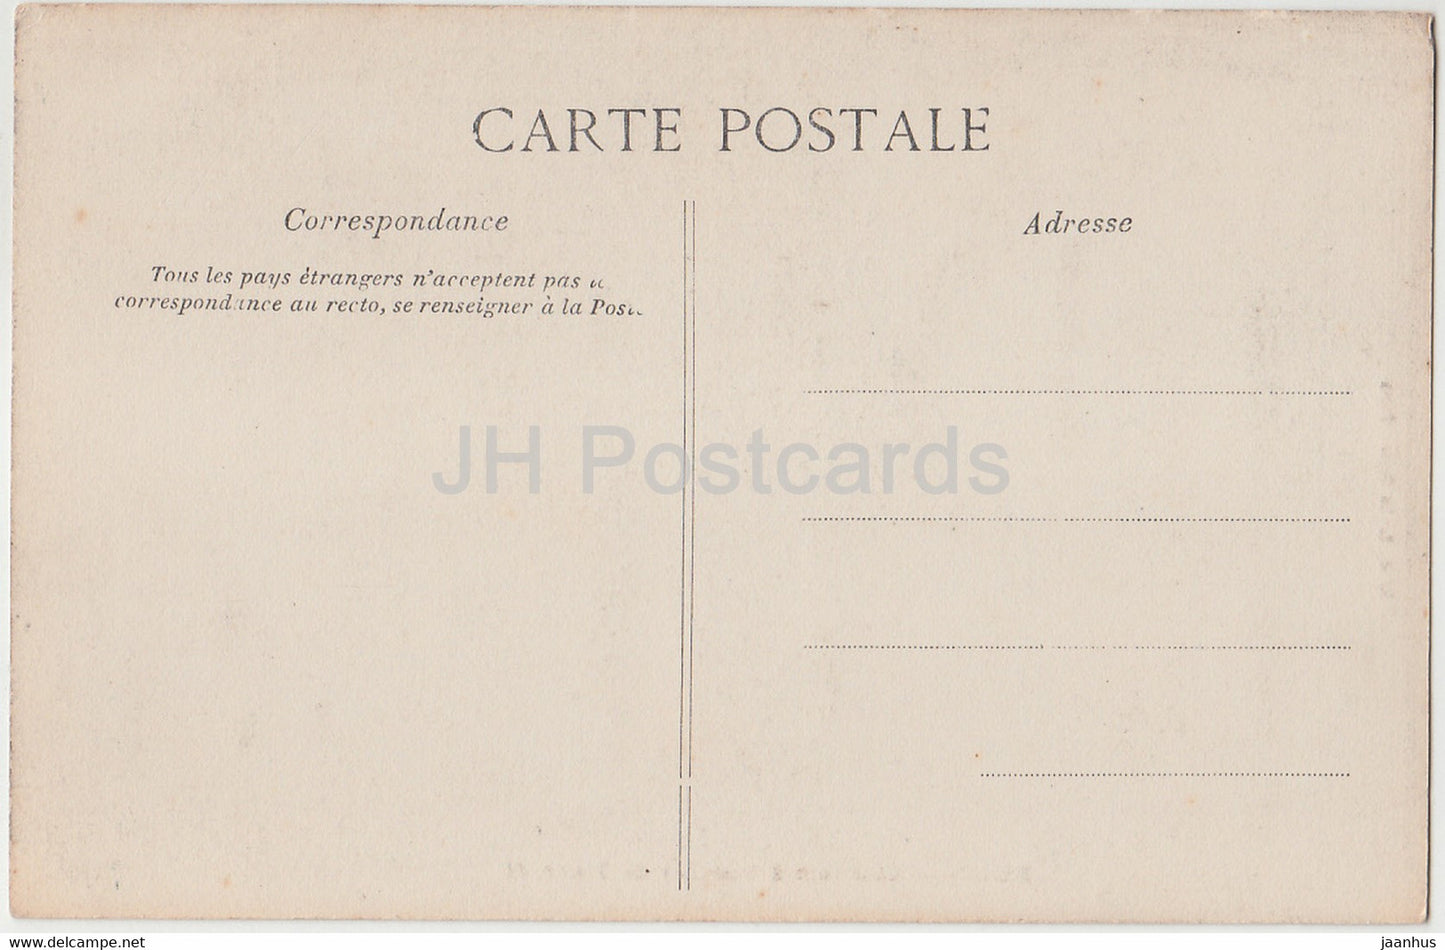 Blois - Chambre à Coucher de Henri II - château - carte postale ancienne - France - inutilisée